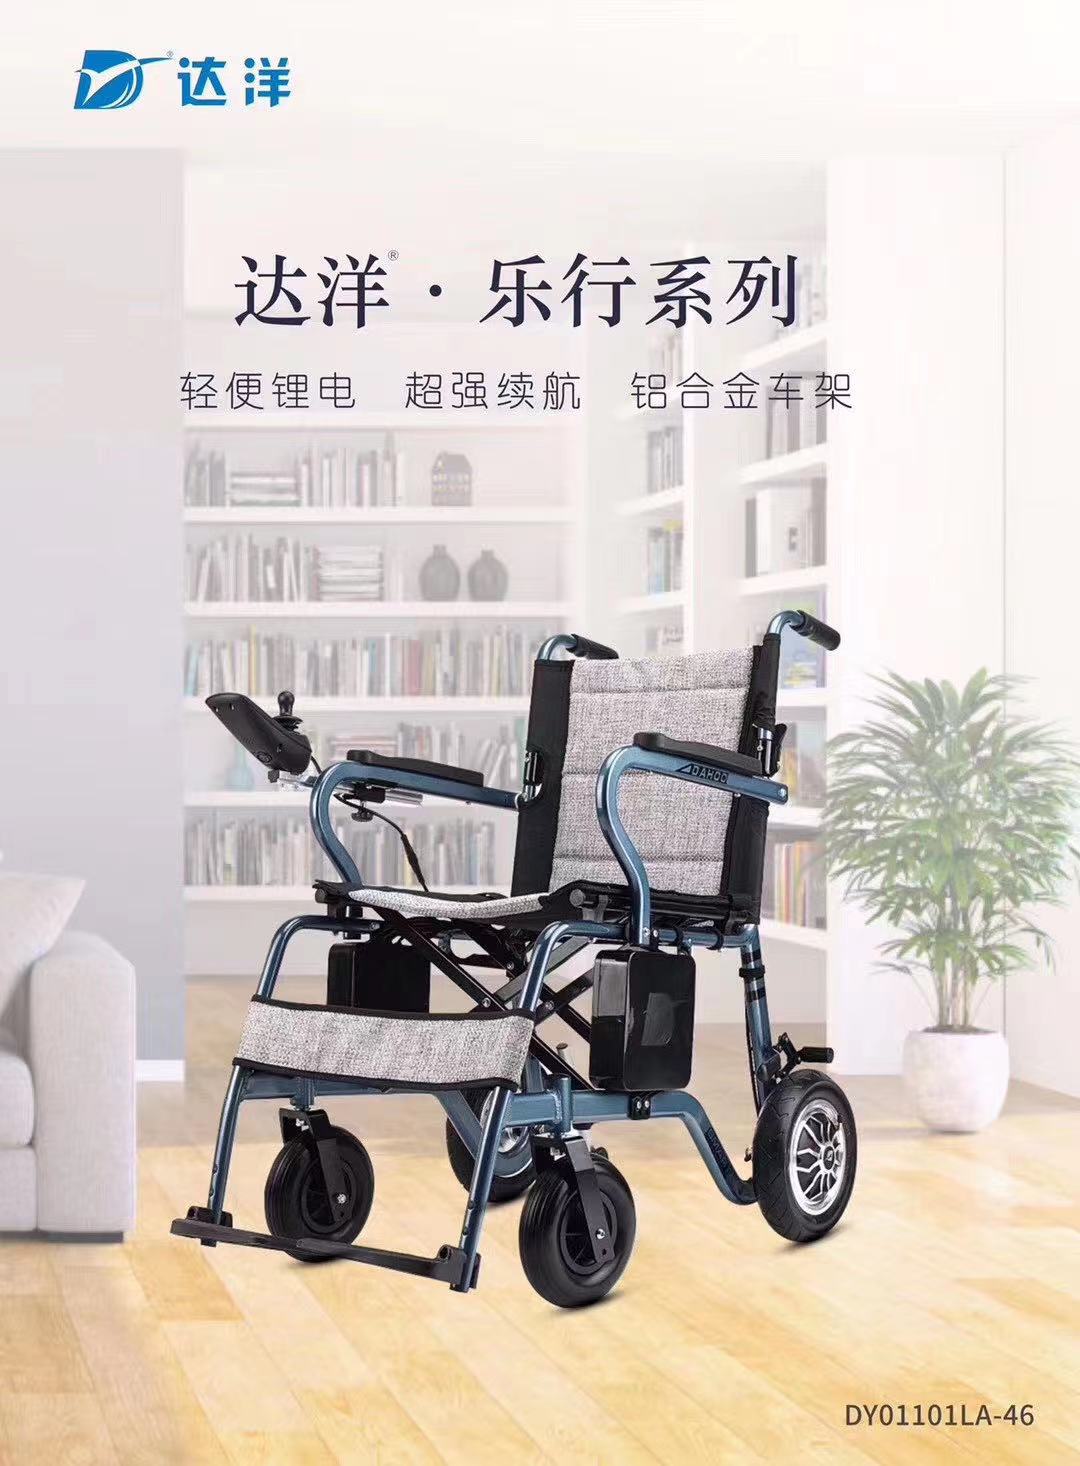 这个新型电动折叠轮椅超便携